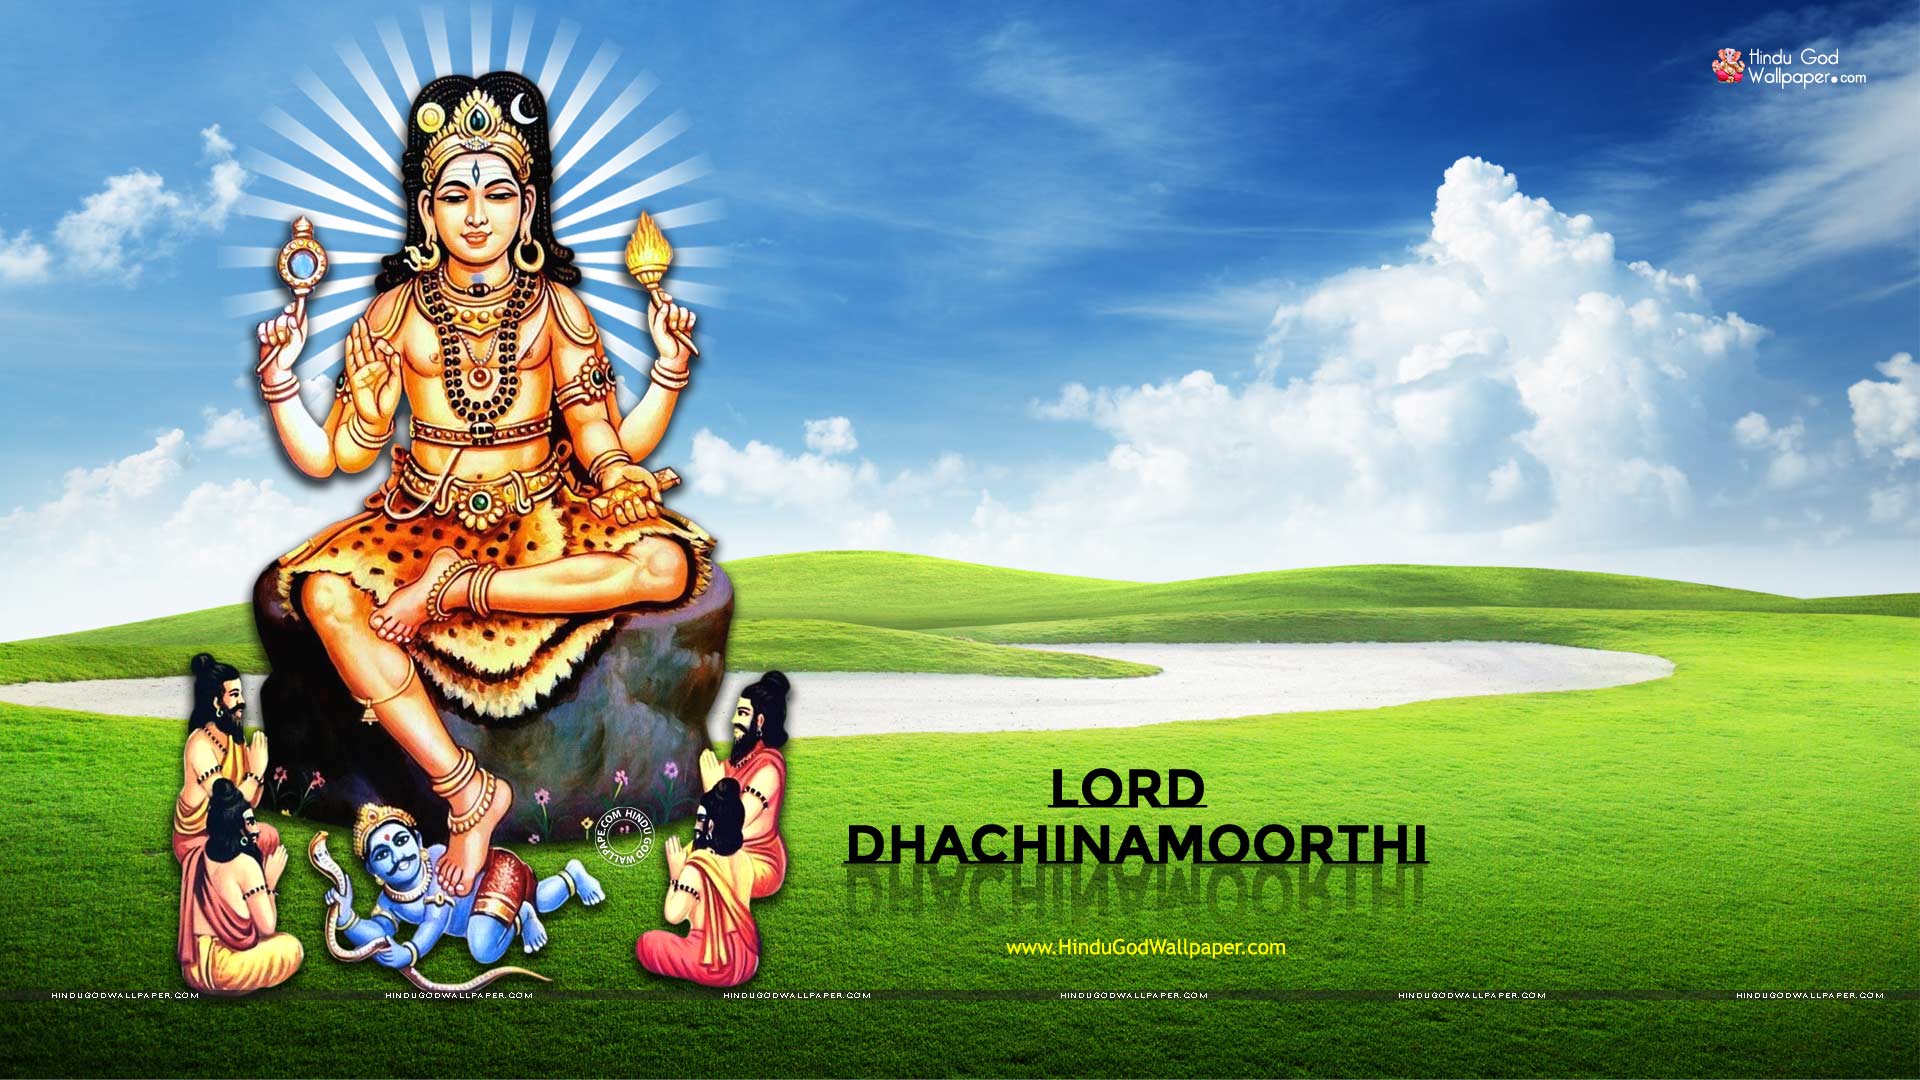 God Dhachinamoorthi HD Wallpaper Image Photo Free Download